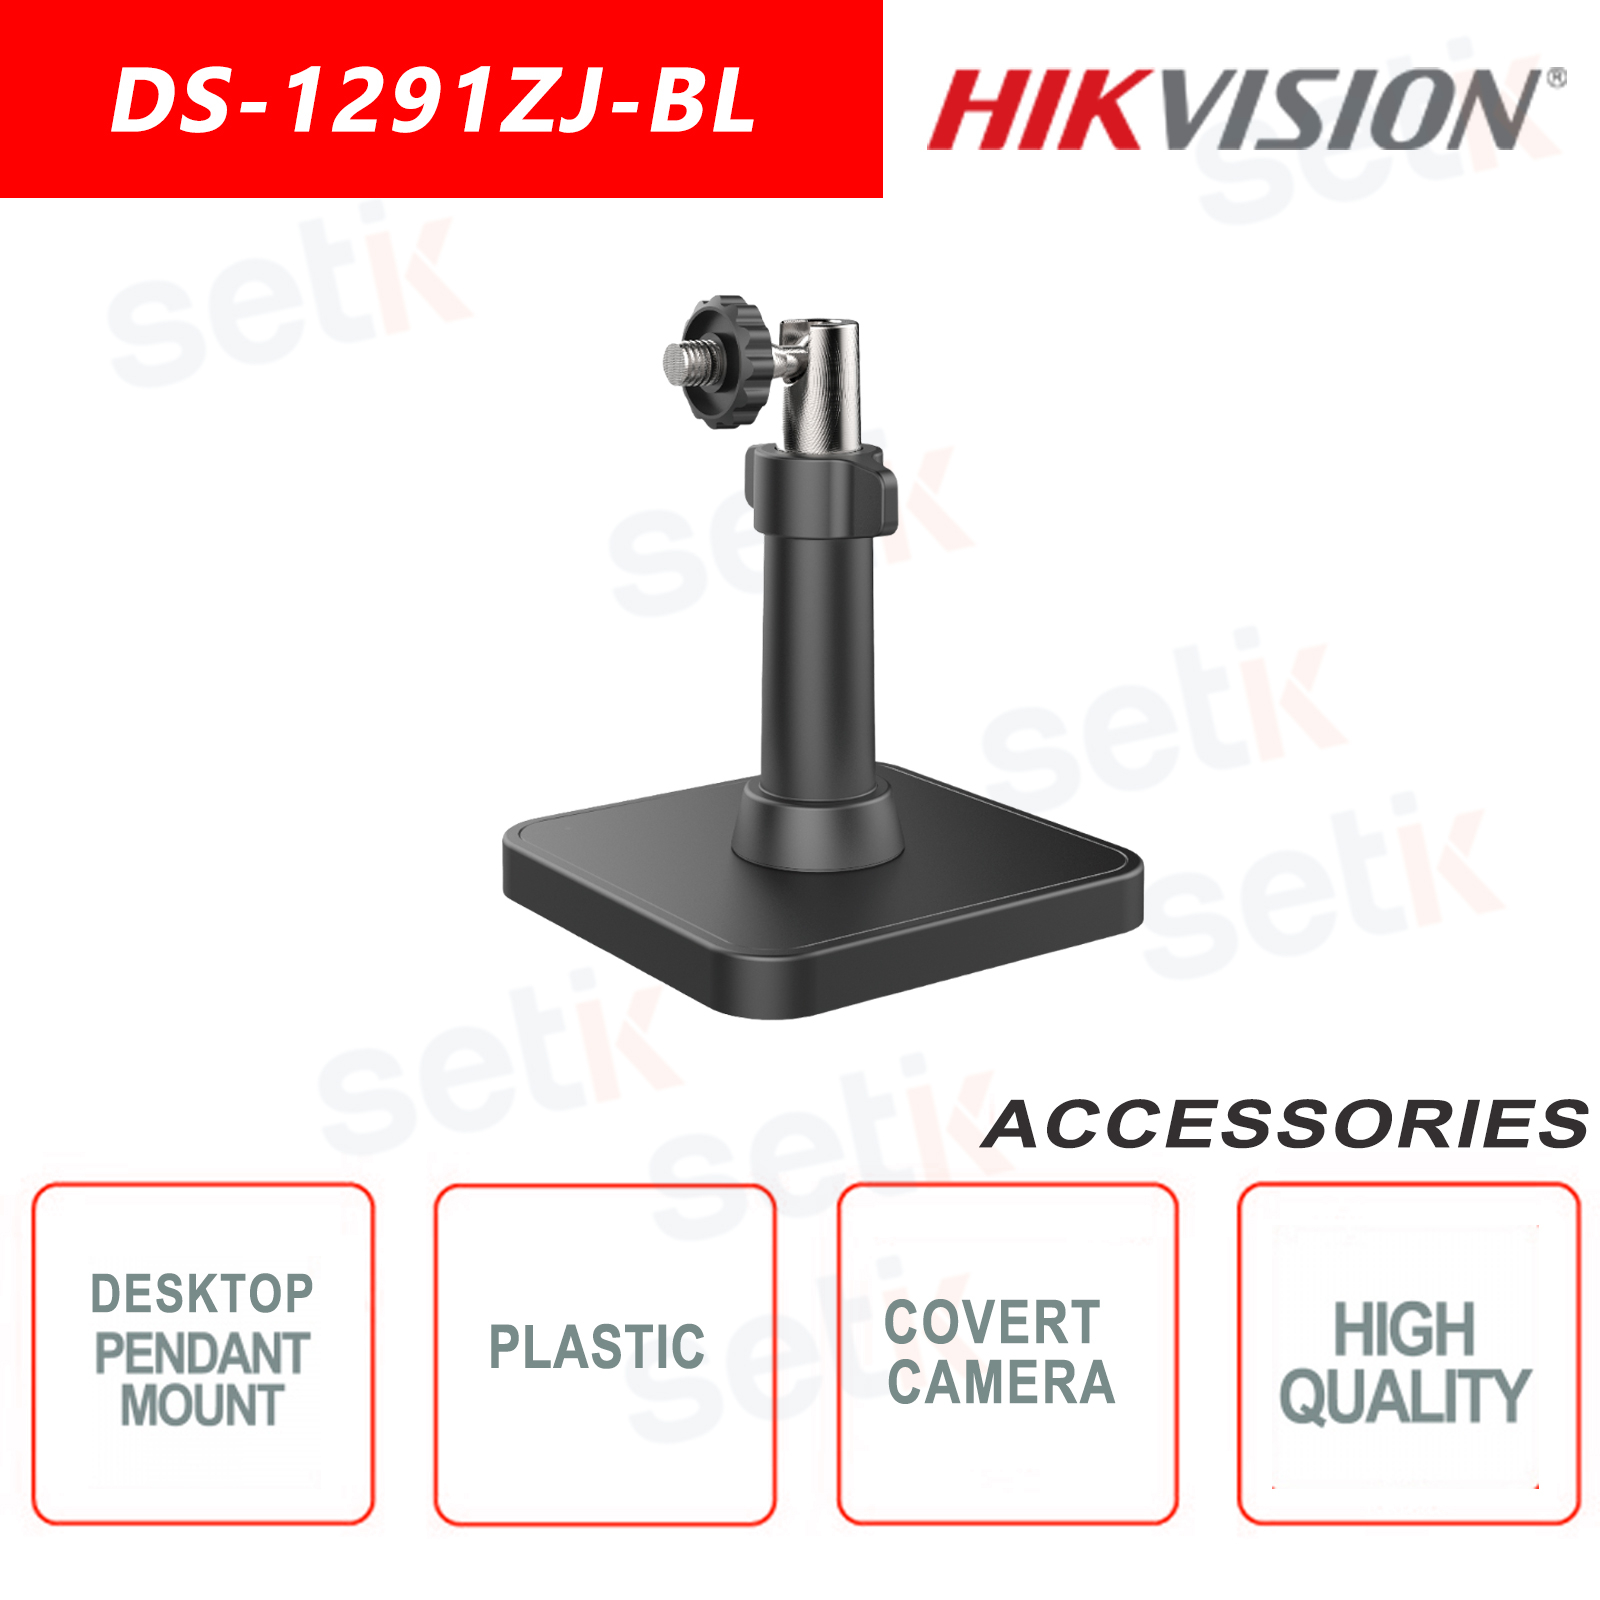 DS-1291ZJ-BL - Kunststoffanhänger oder Tischhalterung für versteckte Kamera  - Hikvision 